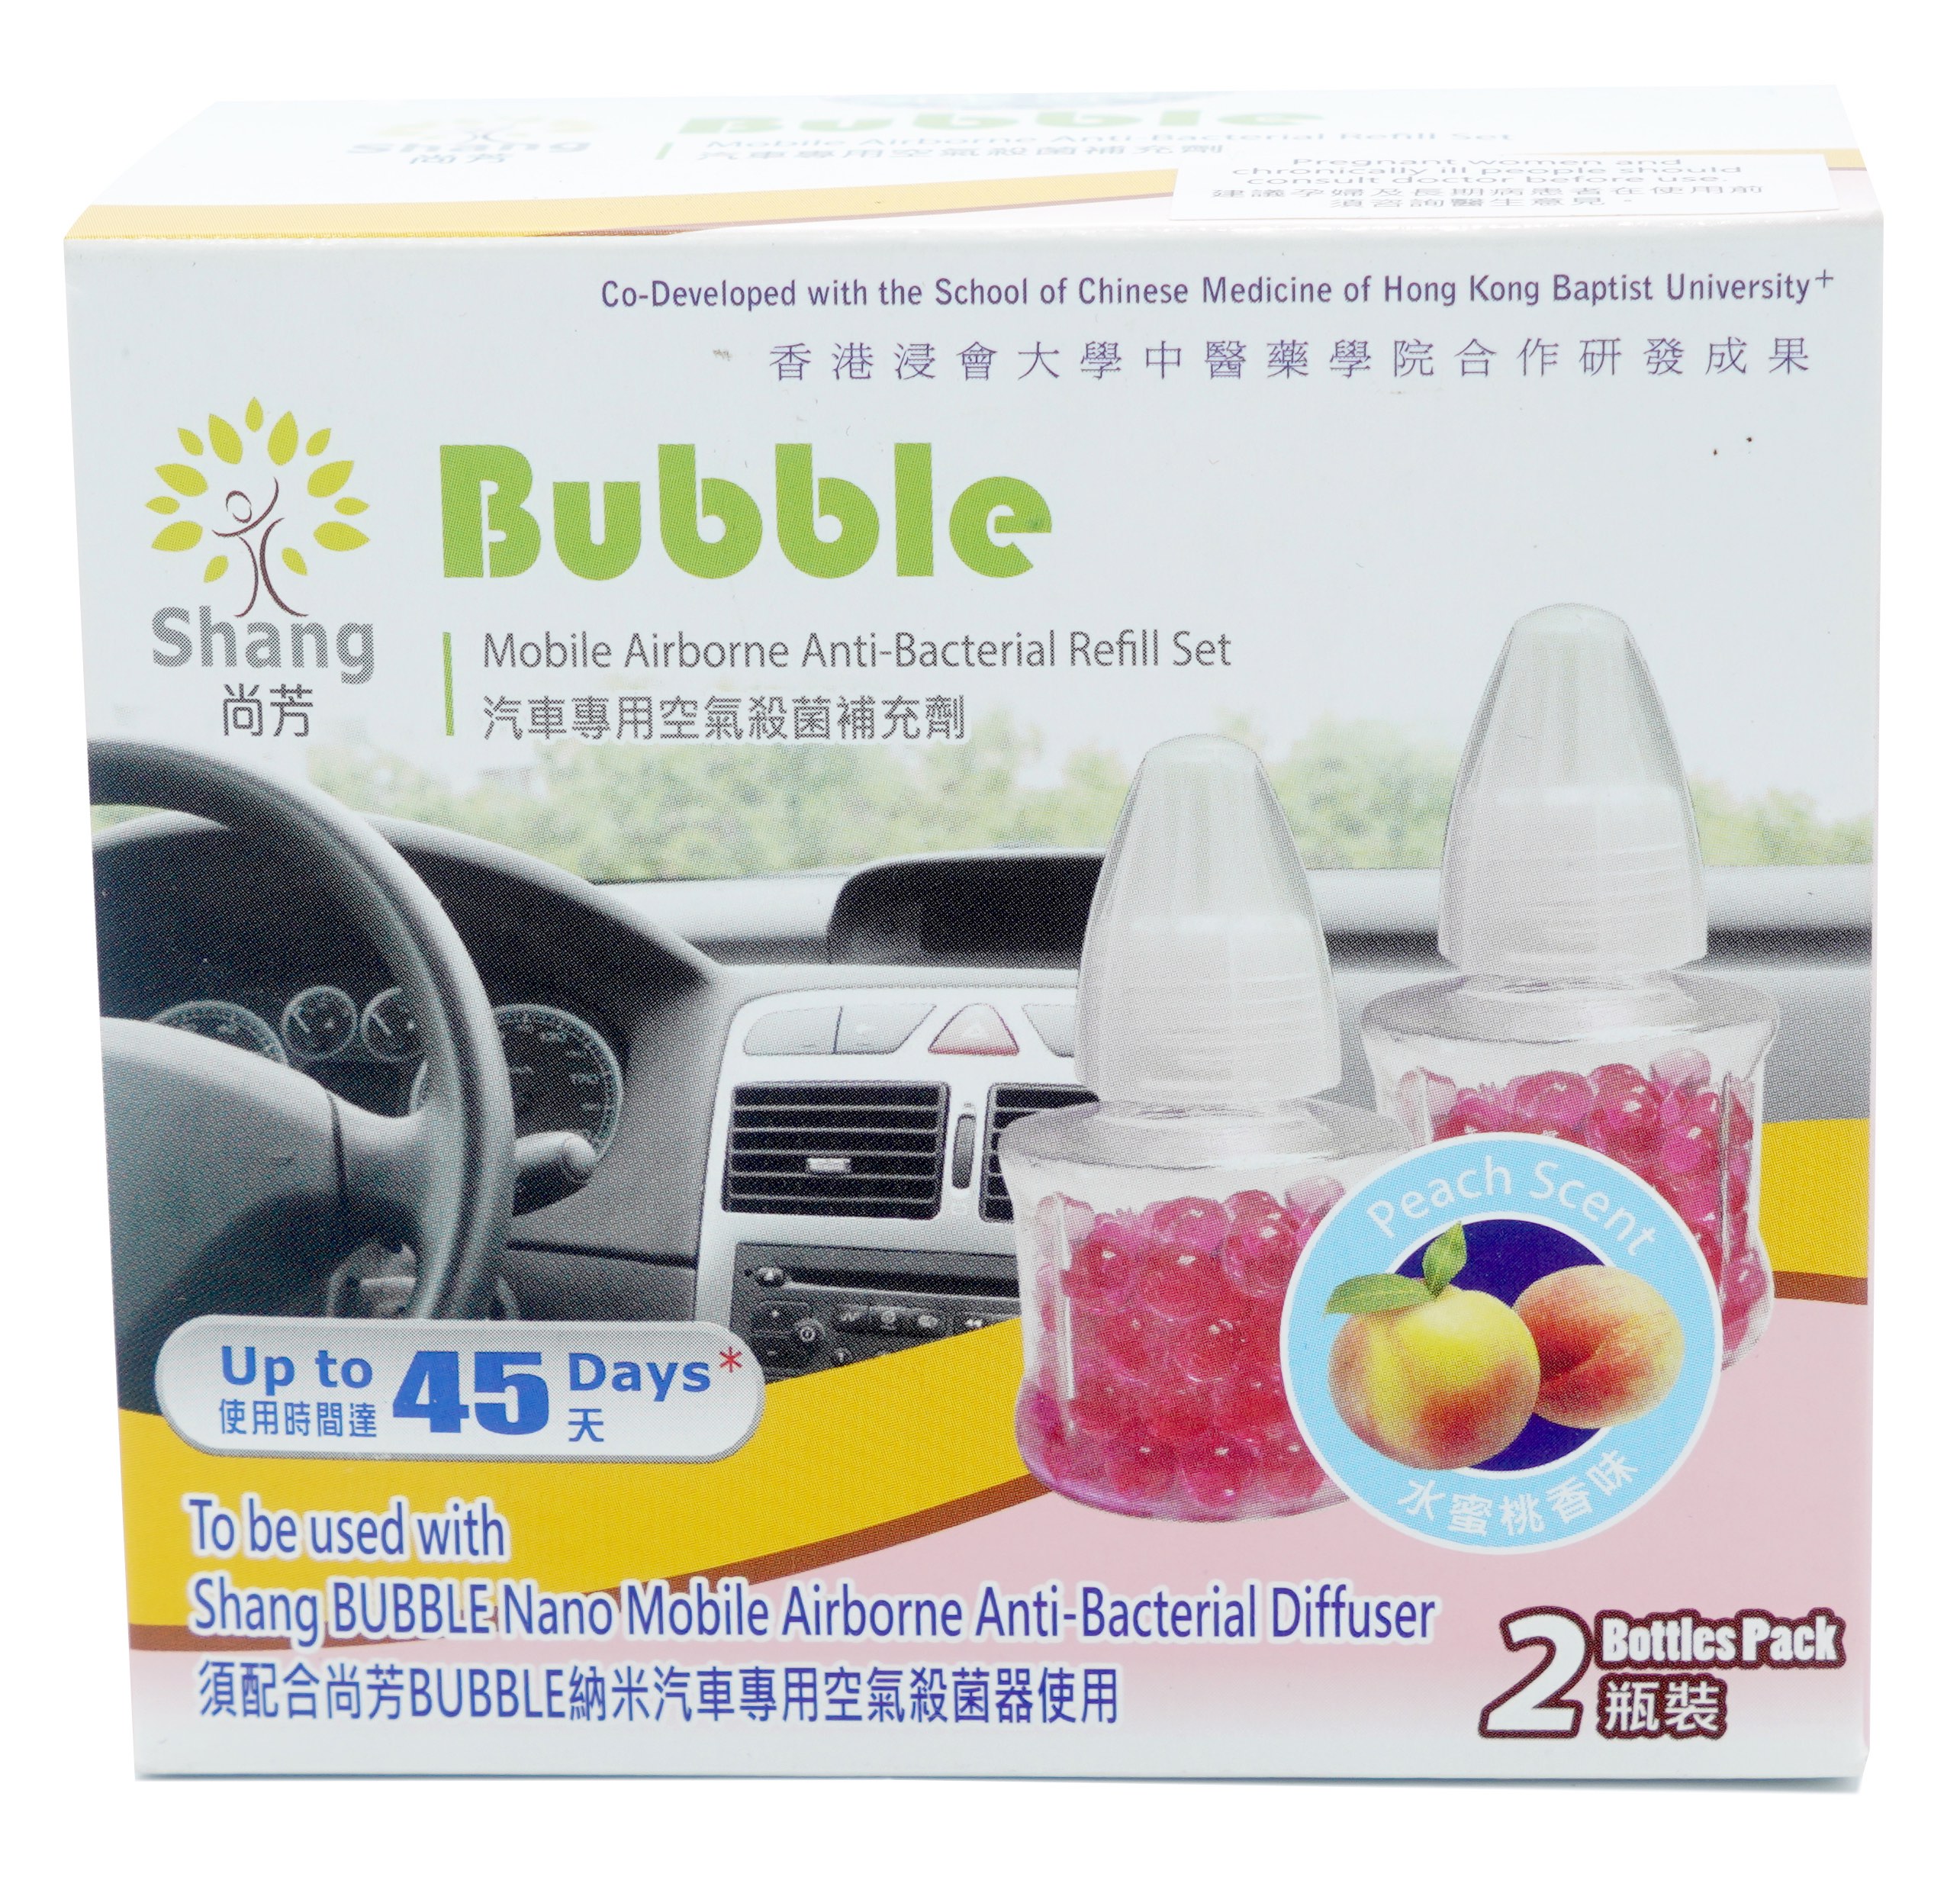 BUBBLE 納米汽車專用空氣抗菌器 補充裝 (孖裝, 茉莉花味)(SH-004A-R)